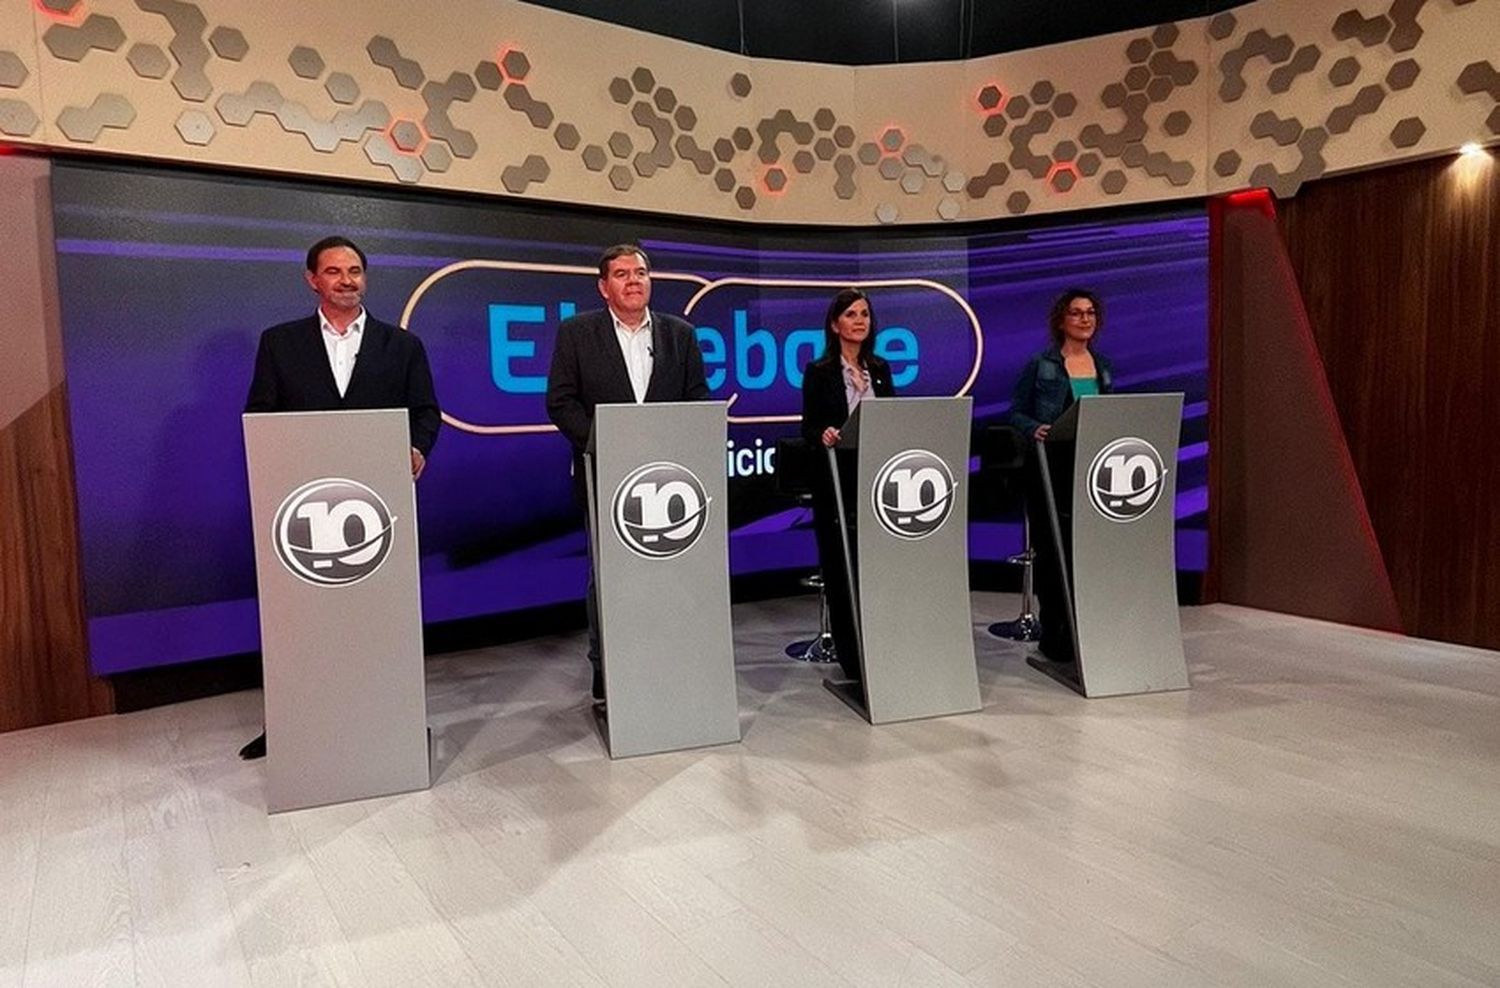 Los candidatos a Intendente debatieron por TV, con algunos cruces picantes